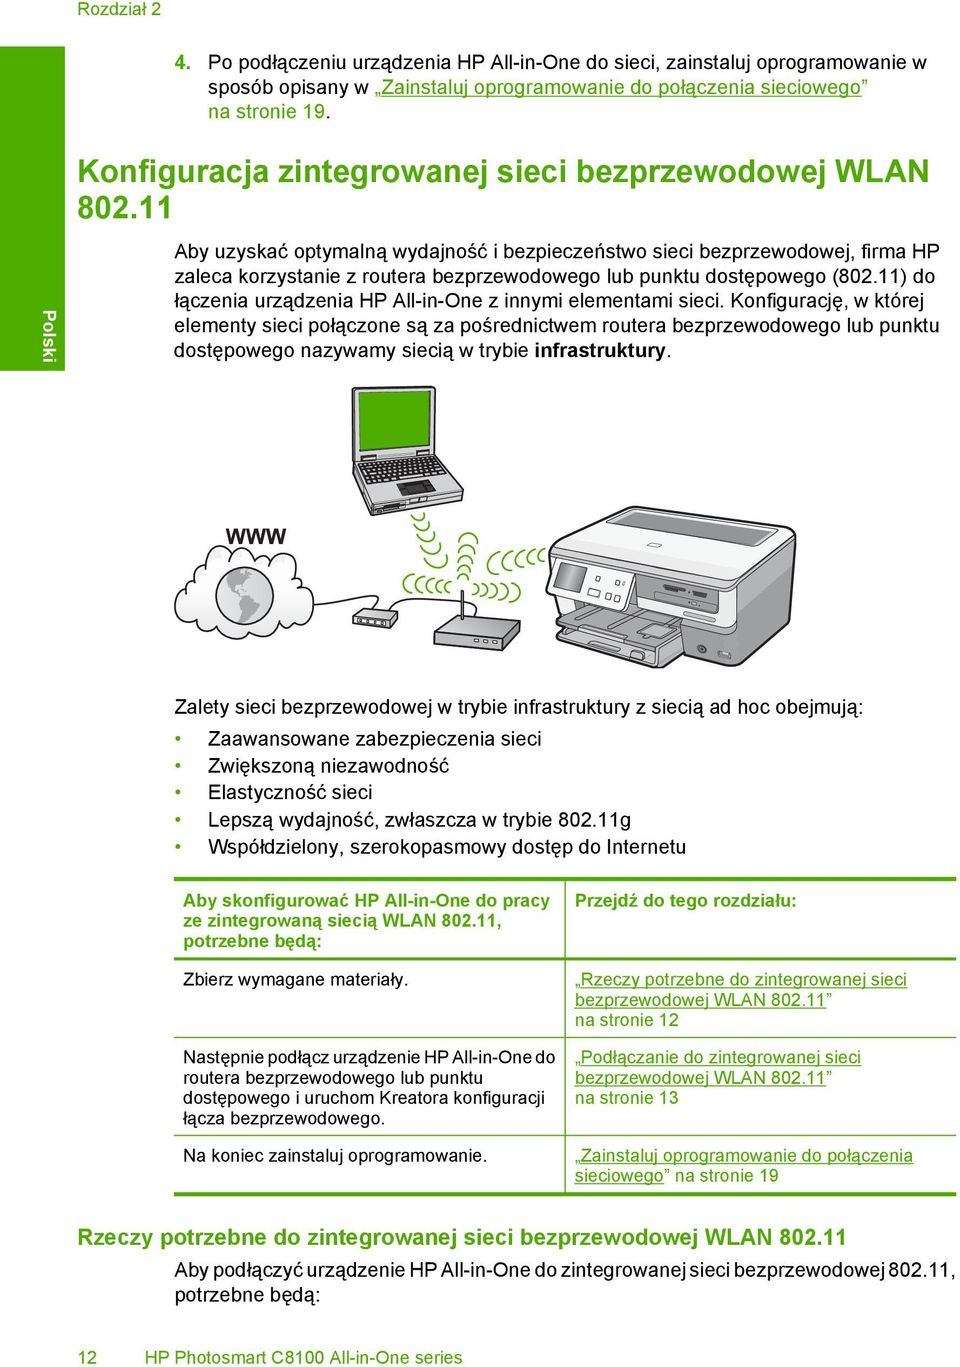 11 Polski Aby uzyskać optymalną wydajność i bezpieczeństwo sieci bezprzewodowej, firma HP zaleca korzystanie z routera bezprzewodowego lub punktu dostępowego (802.